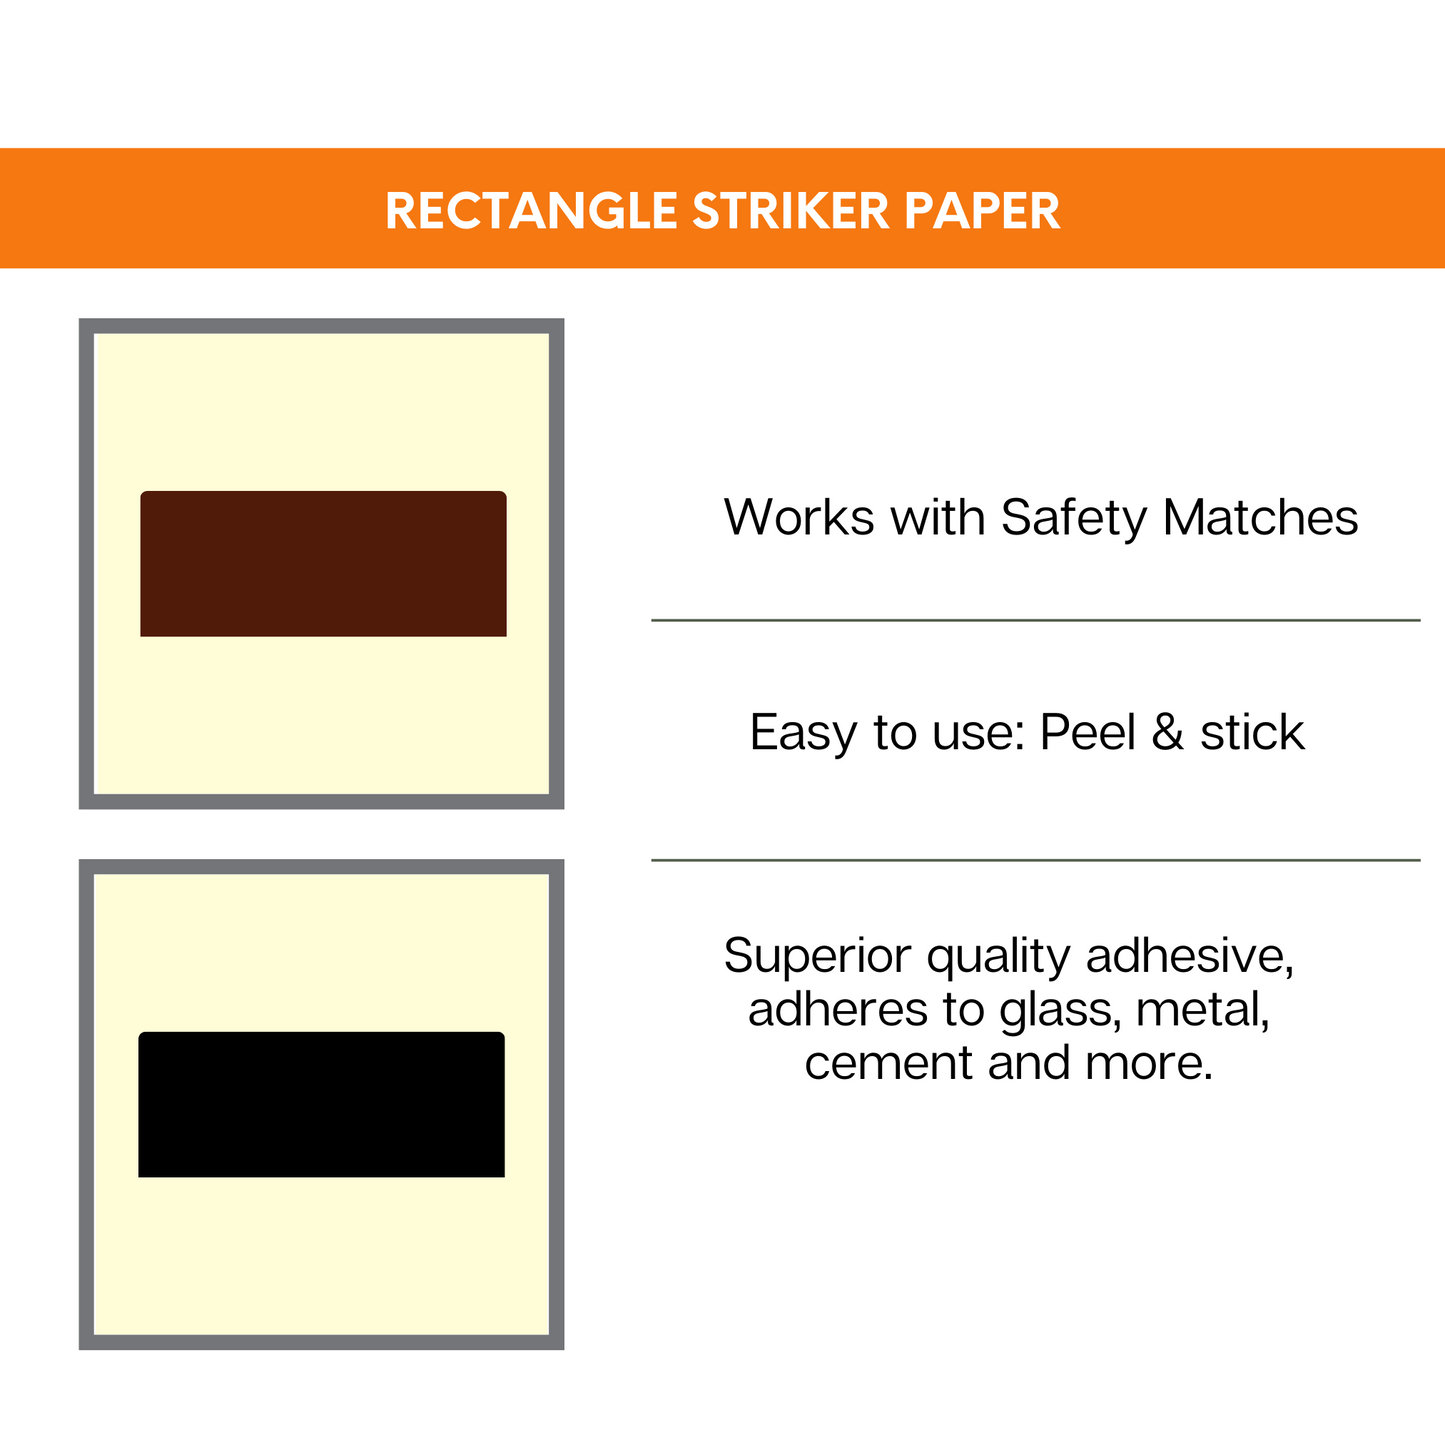 1" x 1.5" Rectangle | Pre-cut Striker Paper